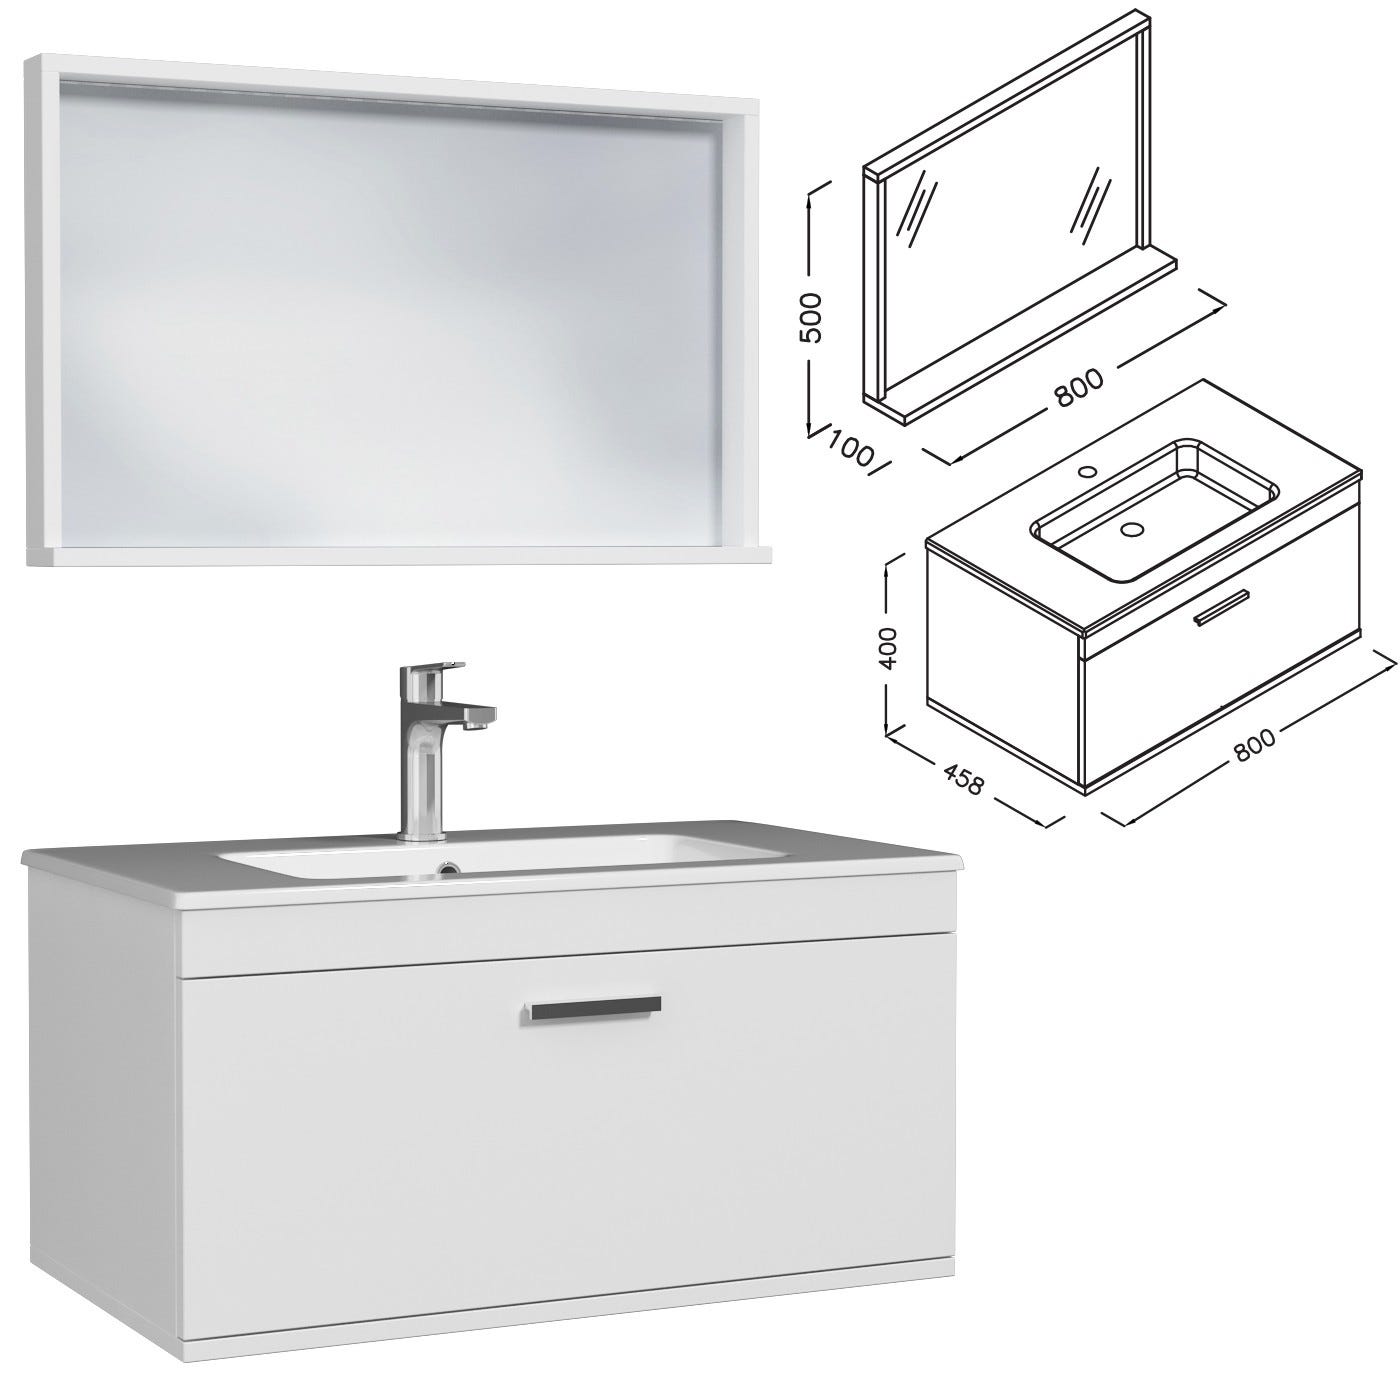 RUBITE Meuble salle de bain simple vasque 1 tiroir blanc largeur 80 cm + miroir cadre 2